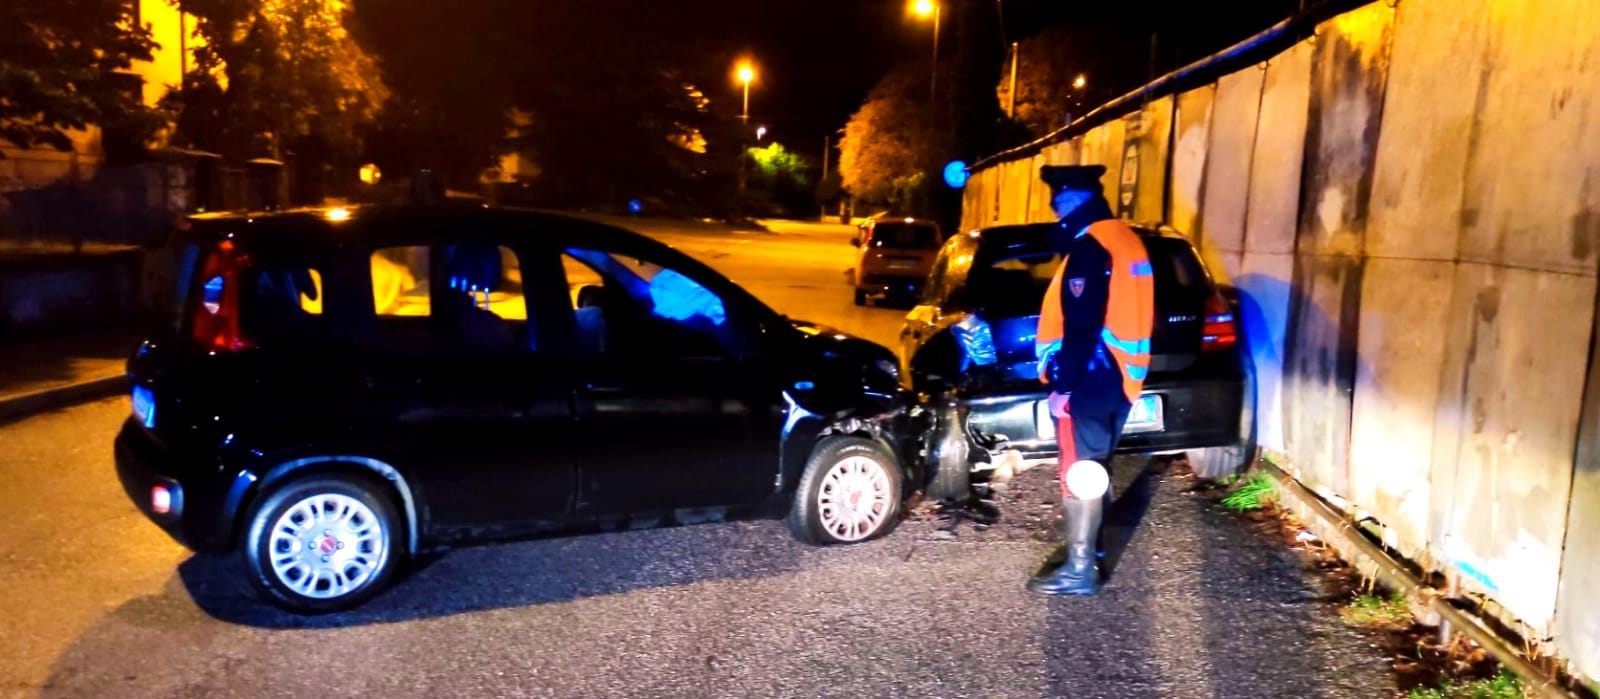 Immagine per Panda contro tabelloni e auto in sosta, incidente nella notte ad Aurisina